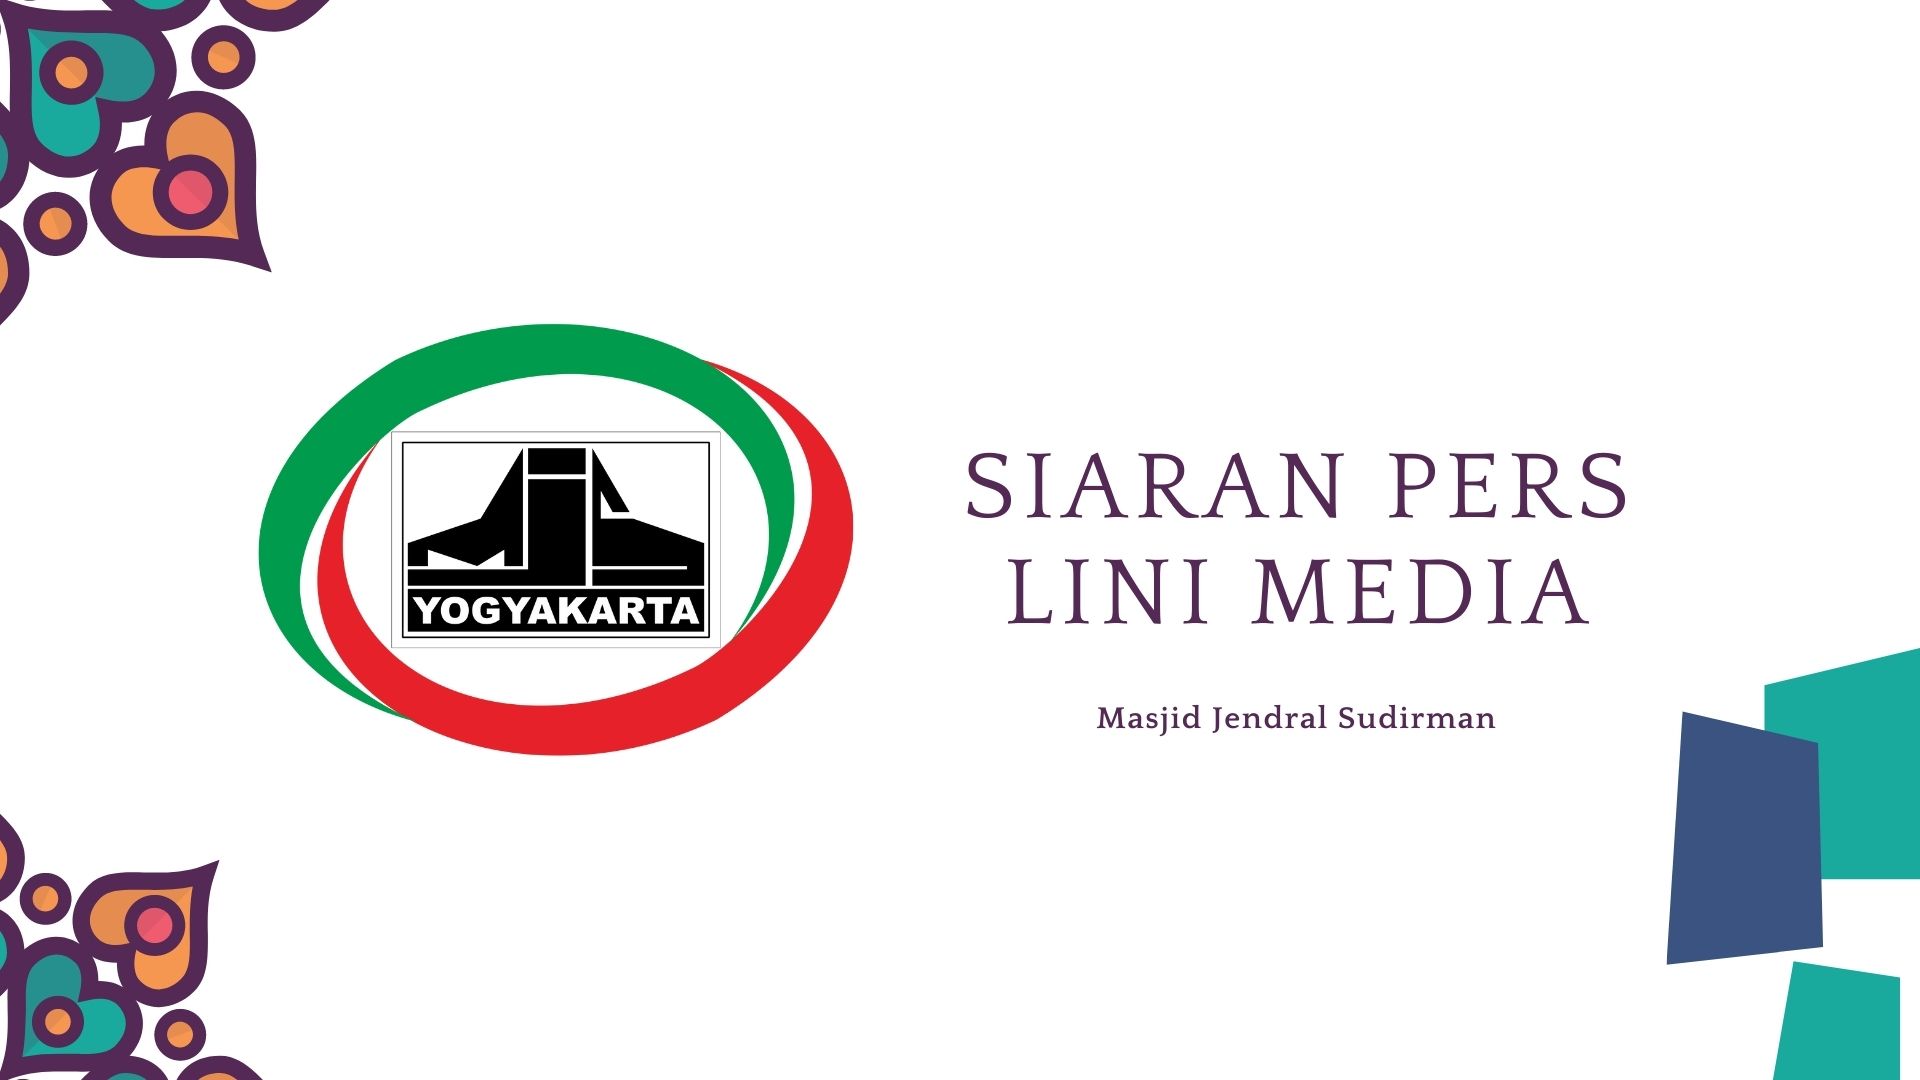 Siaran Pers Lini Media Masjid Jendral Sudirman